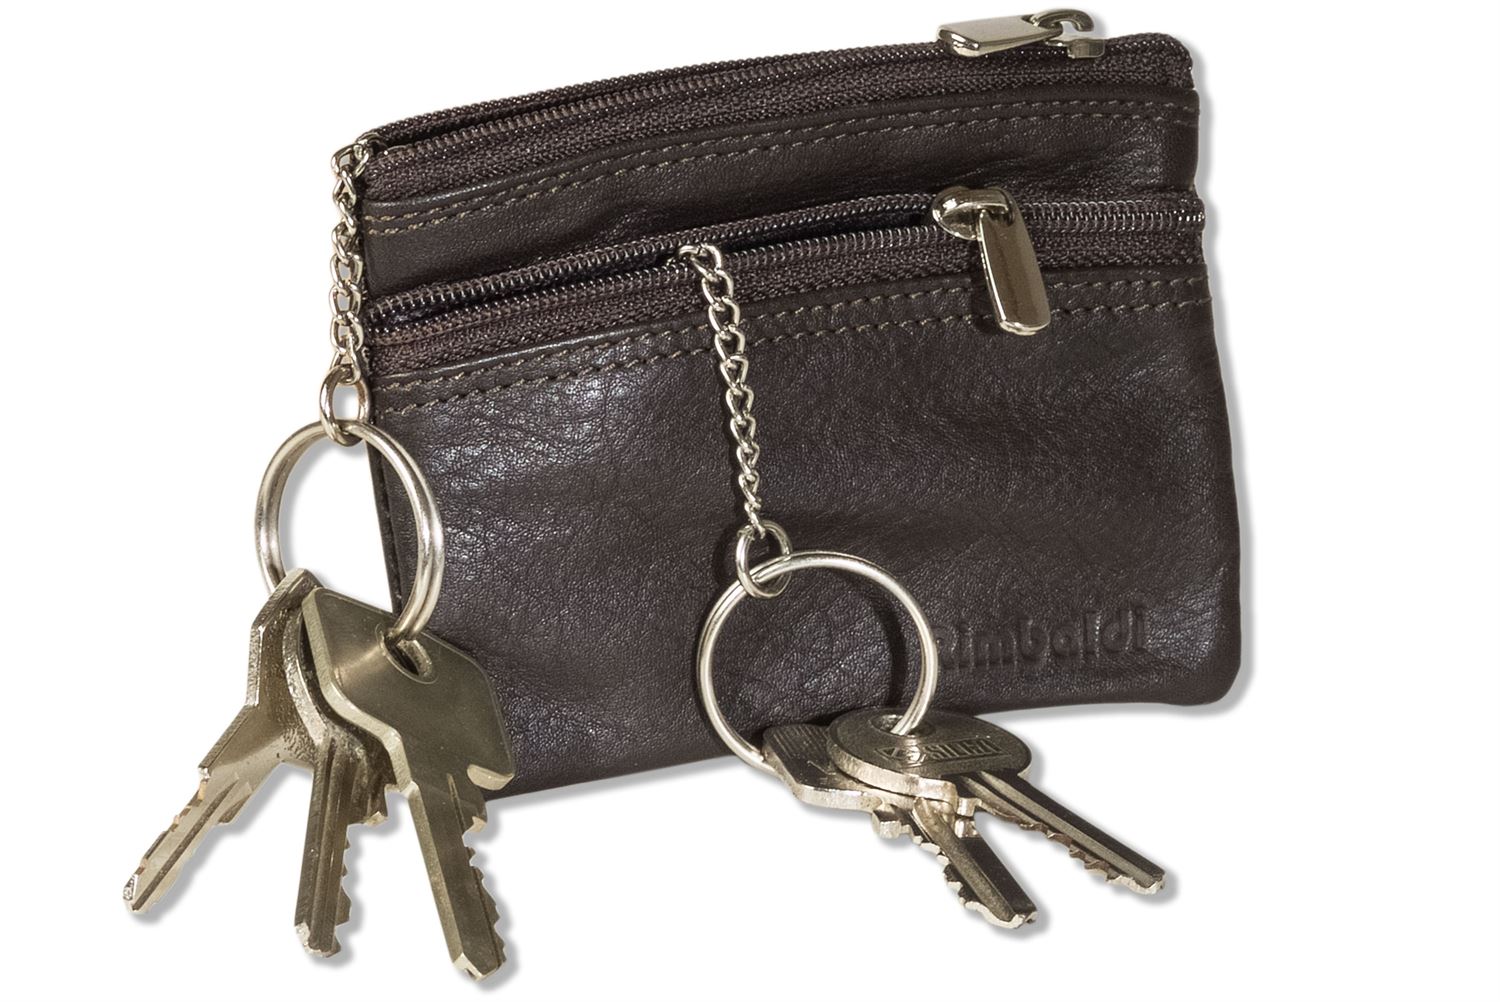 Rimbaldi® Doppel-Schlüsseltasche mit großem Extrafach für den Autoschlüssel aus weichem, naturbelassenem Rindsleder in Dunkelbraun